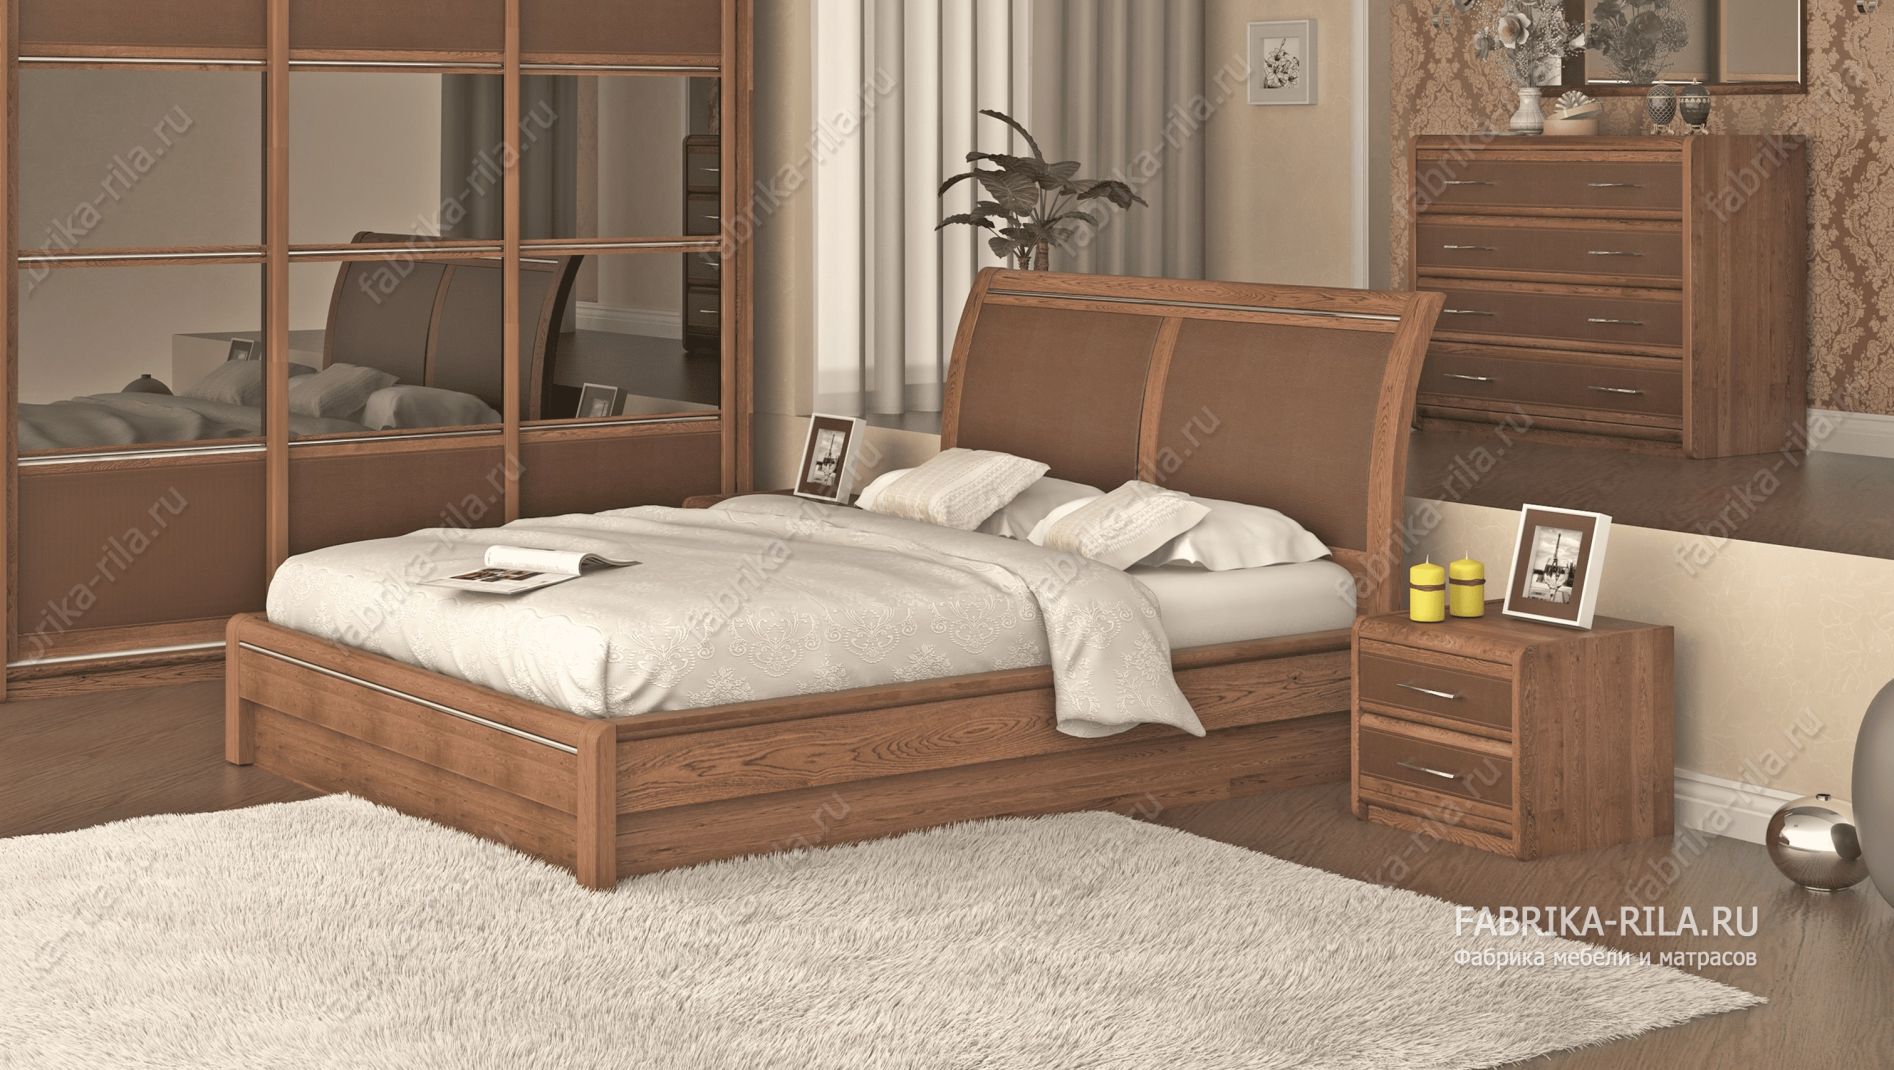 кровать Okaeri 6 см— 90x190 см. из березы